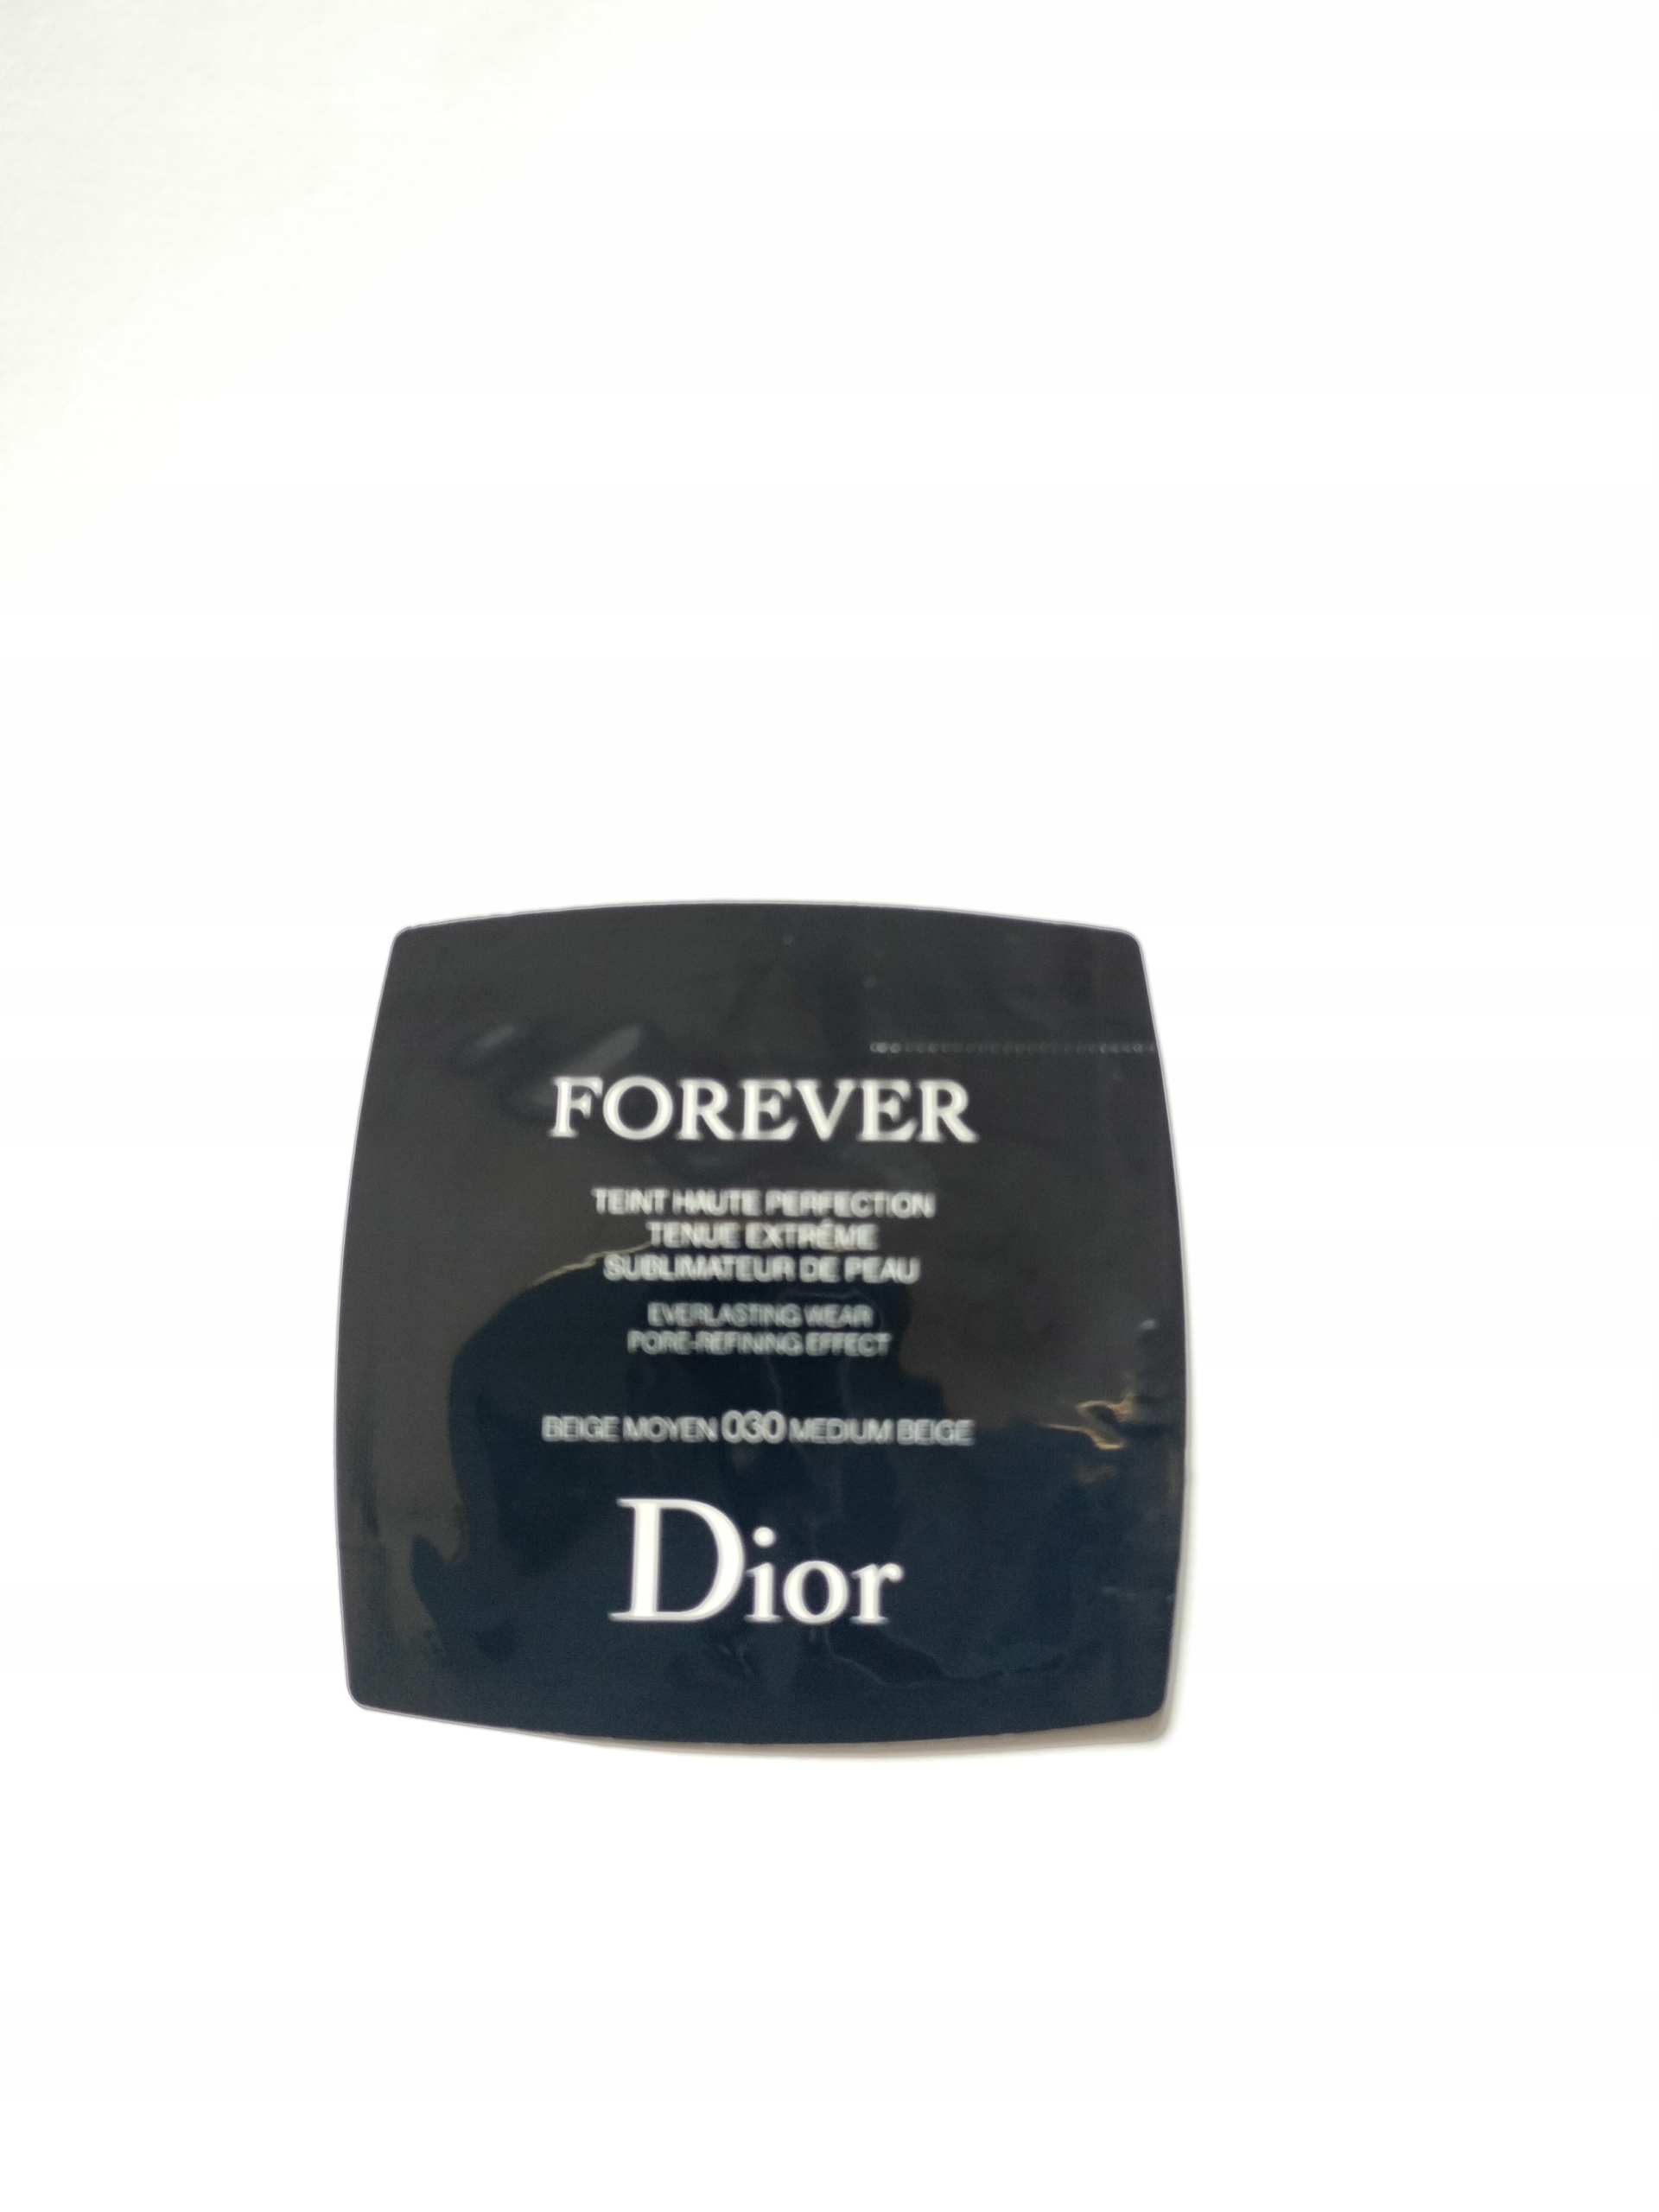 Vzorka Dior Forever Everlasting Makeup 030 Beige